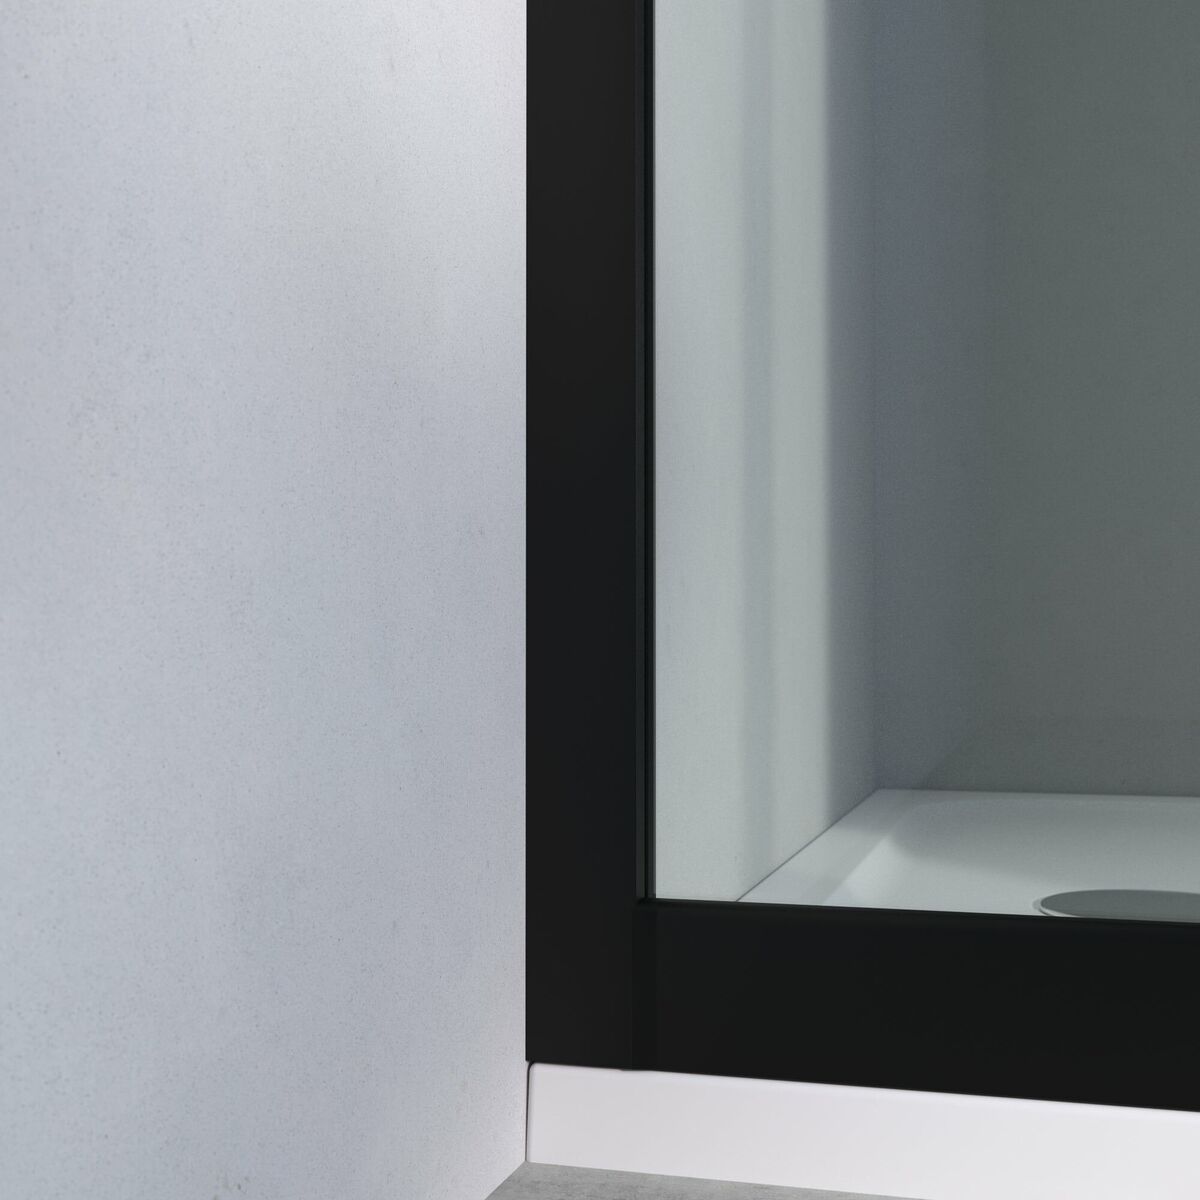 Szkło drzwi przesuwnych malowane Easy 110 X 190 Sensea